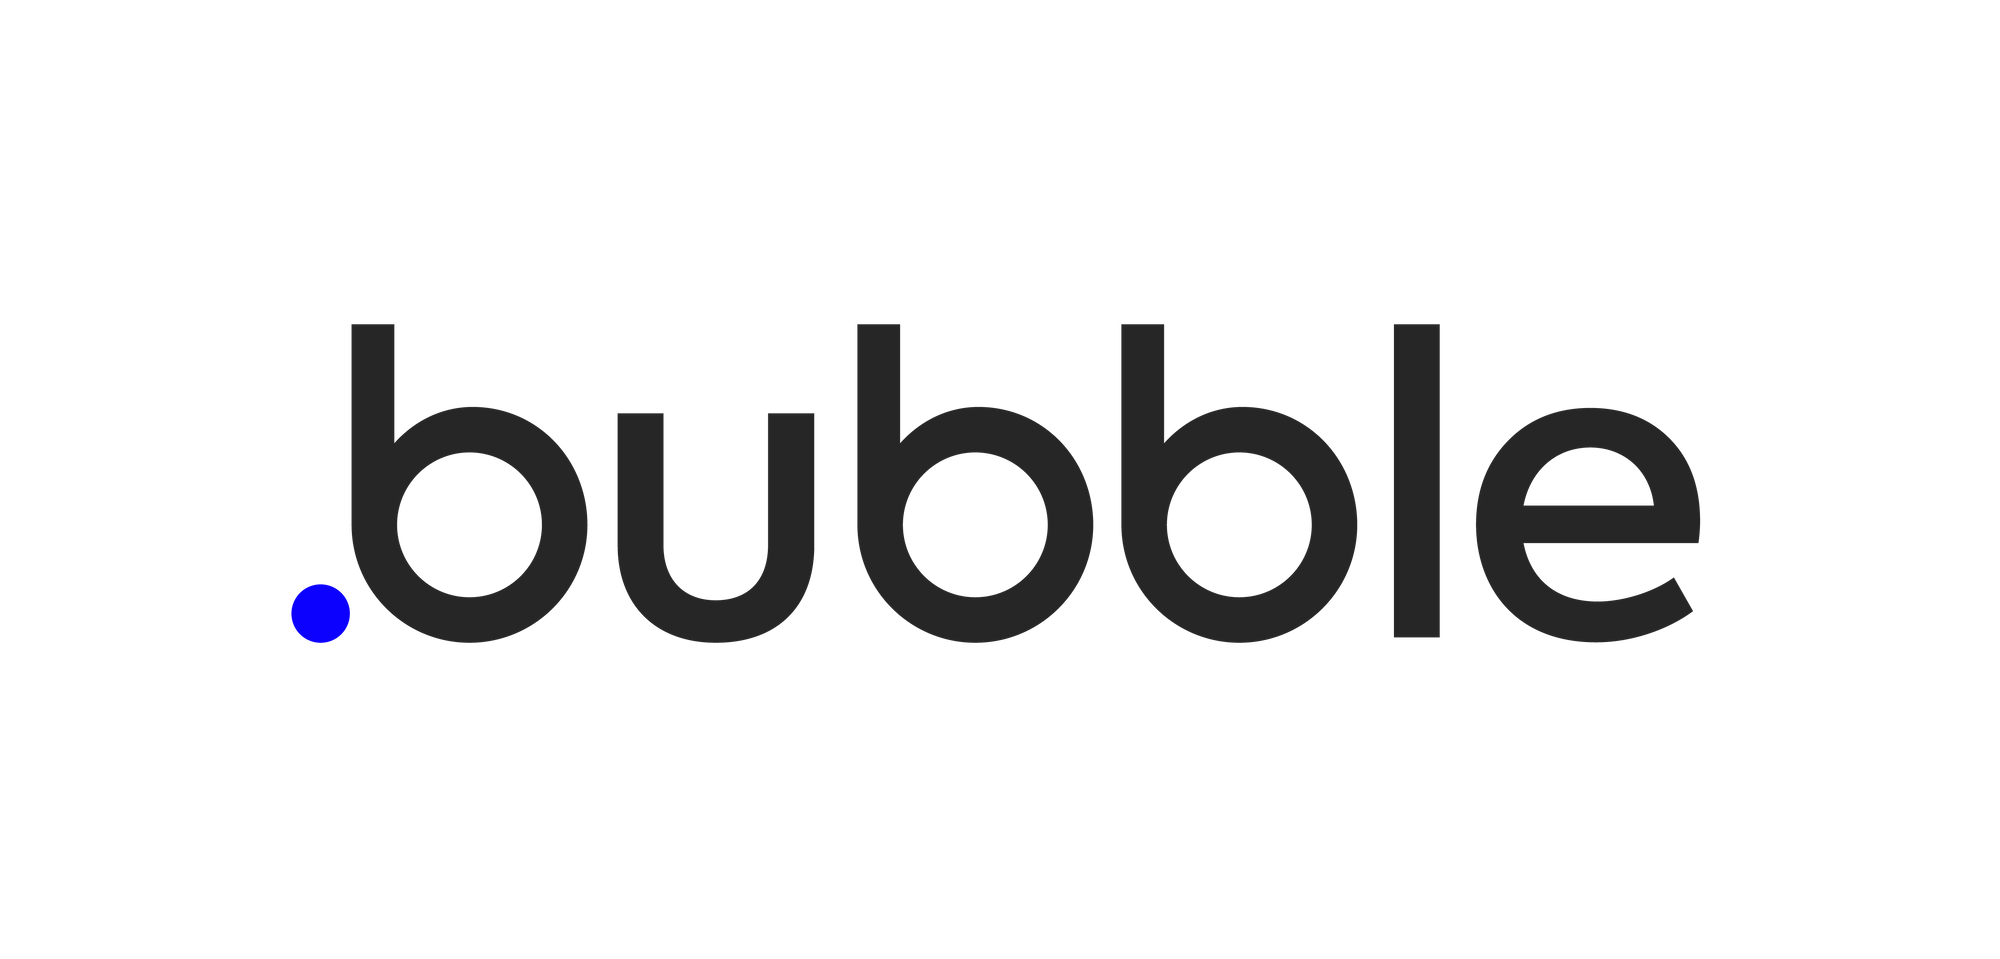 Helppier integrations - Bubble.io 